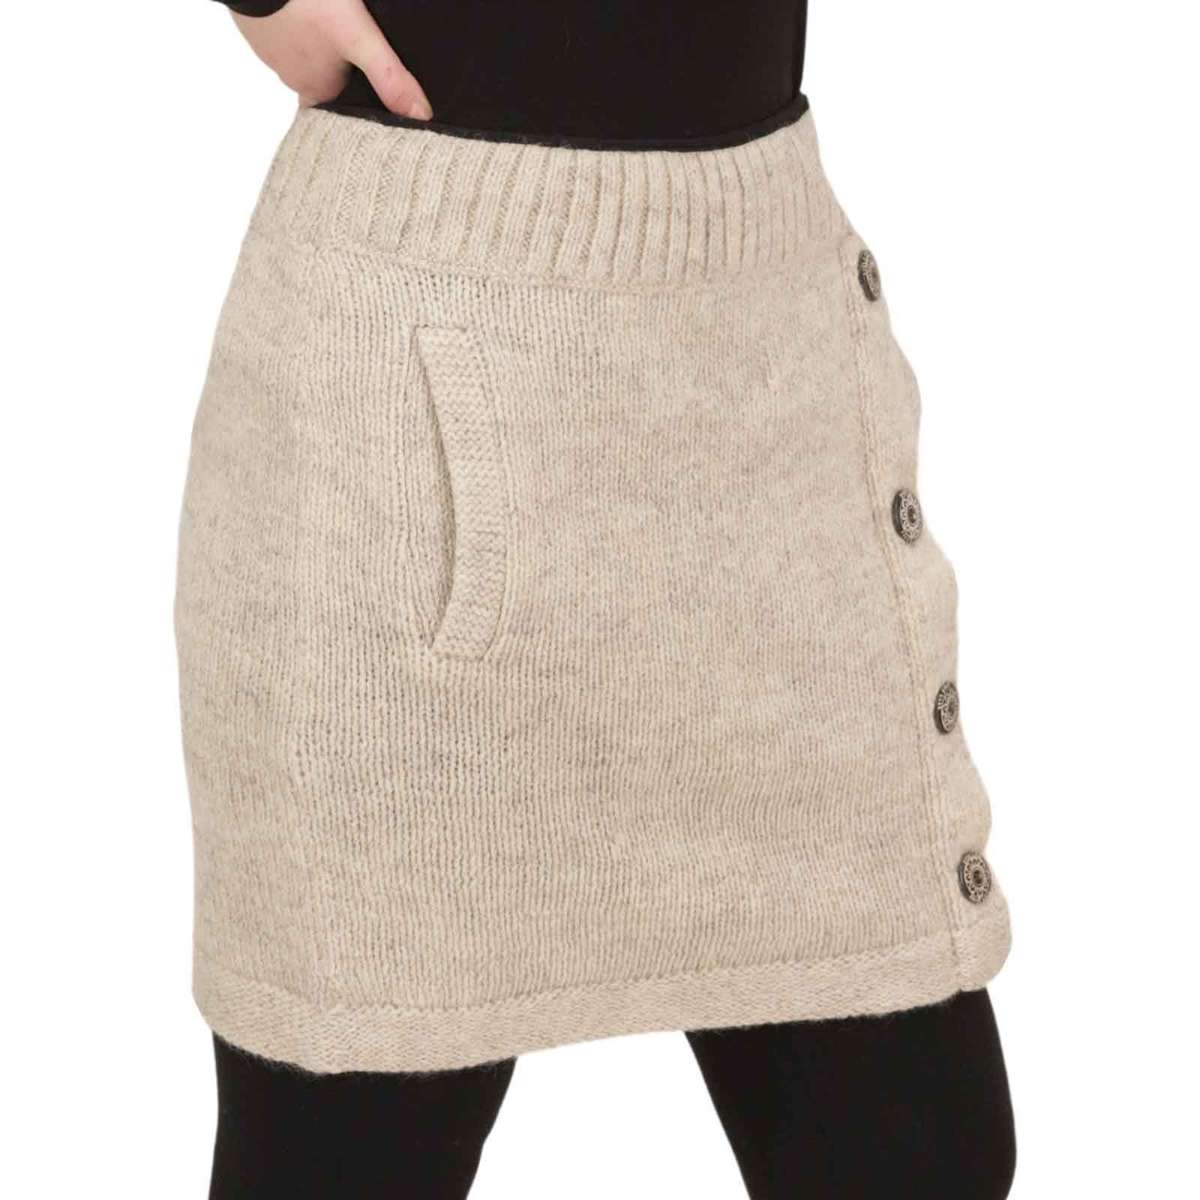 Вязаная юбка вязаная юбка короткая юбка с классическим узором на шерстяной подкладке бохо